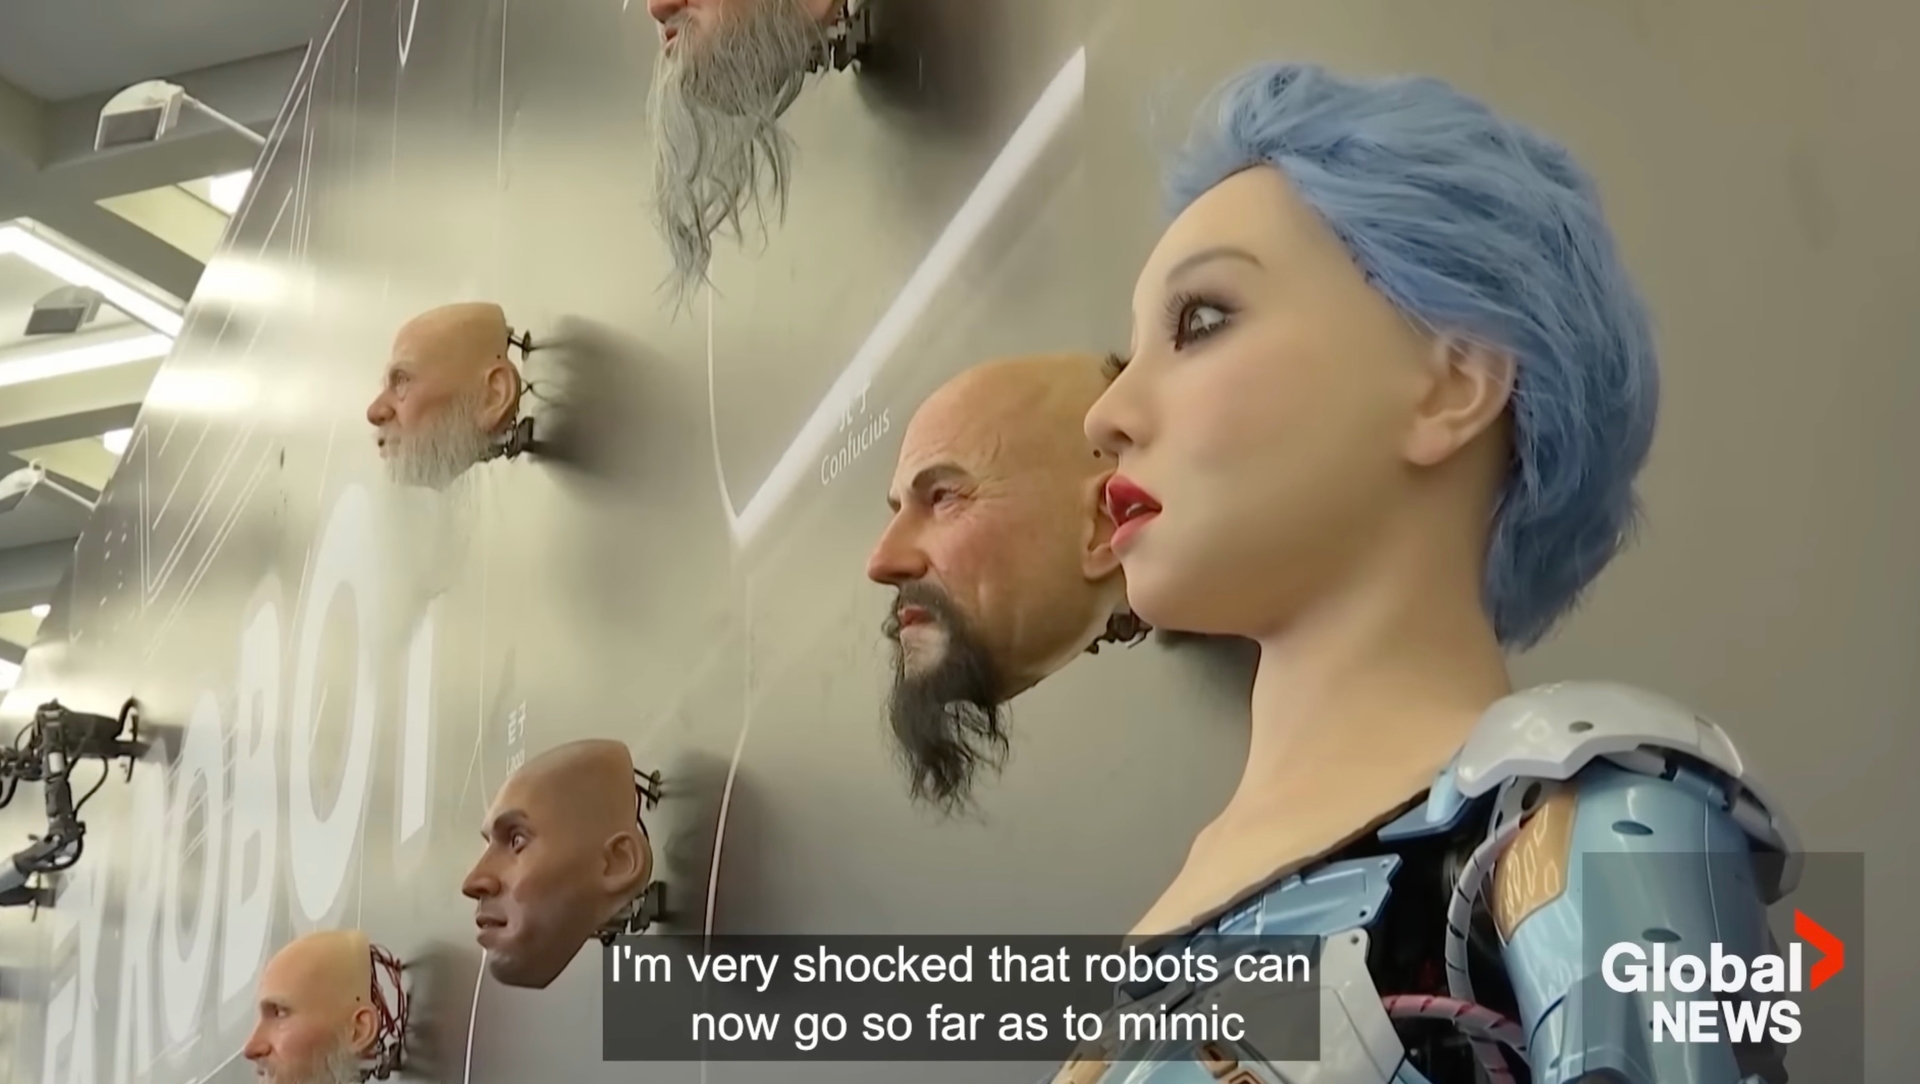 Afbeelding van China toont robots die wel heel erg op mensen lijken en zelfs emoties tonen